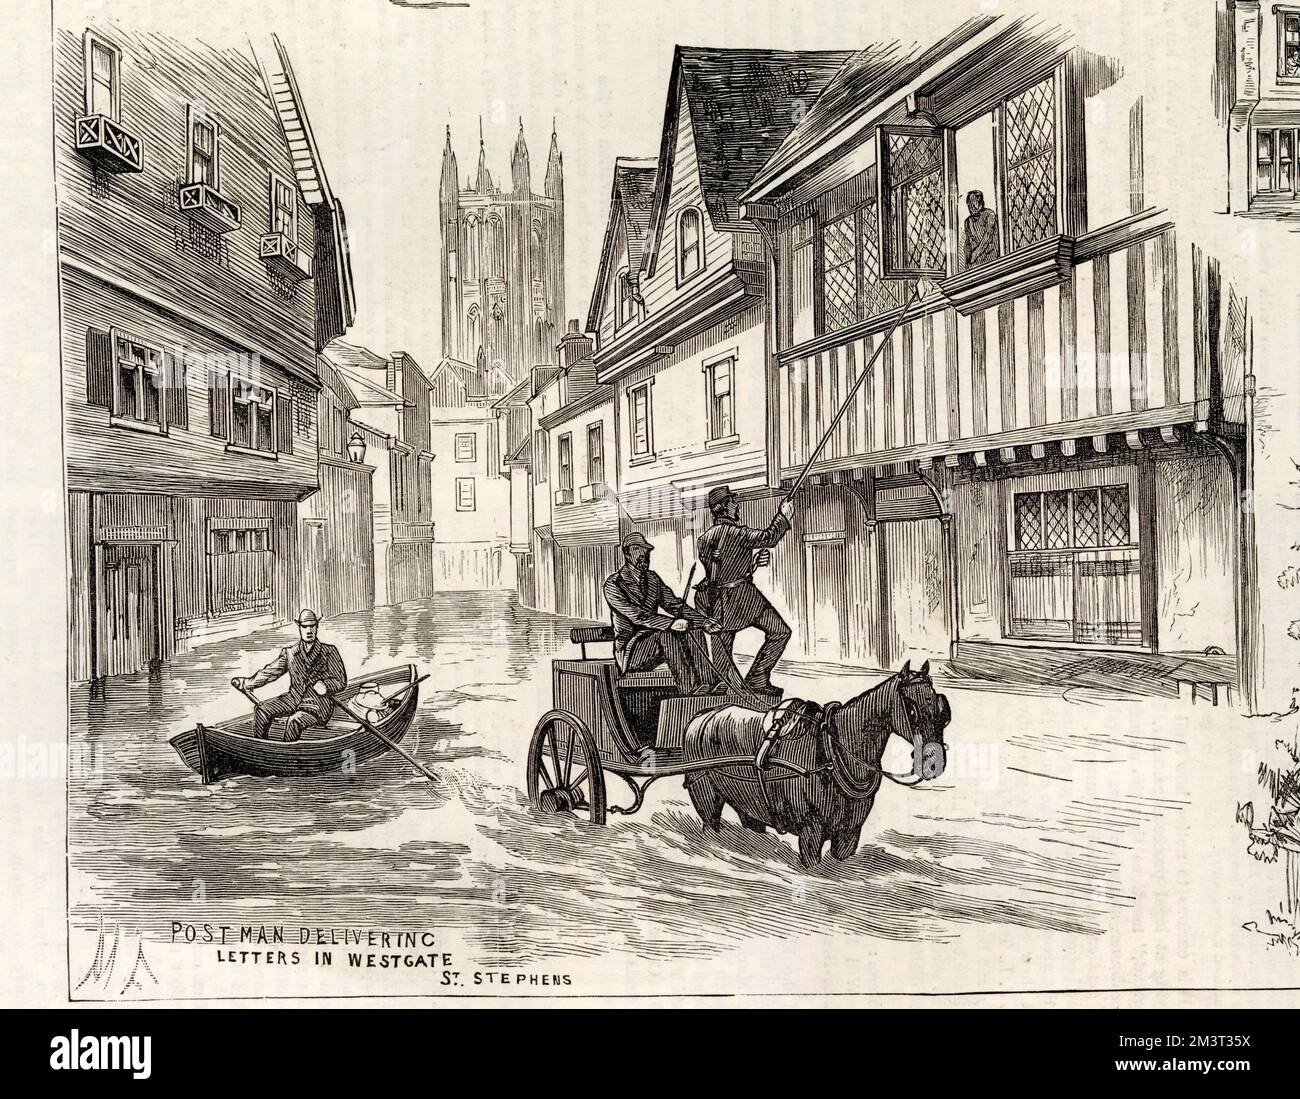 Inondations à Canterbury en 1882. Un postier livre des lettres à un résident dans une maison médiévale de Westgate au moyen d'un cheval et d'une calèche et d'un long poteau, tandis que quelqu'un d'autre passe dans un bateau à rames! Banque D'Images